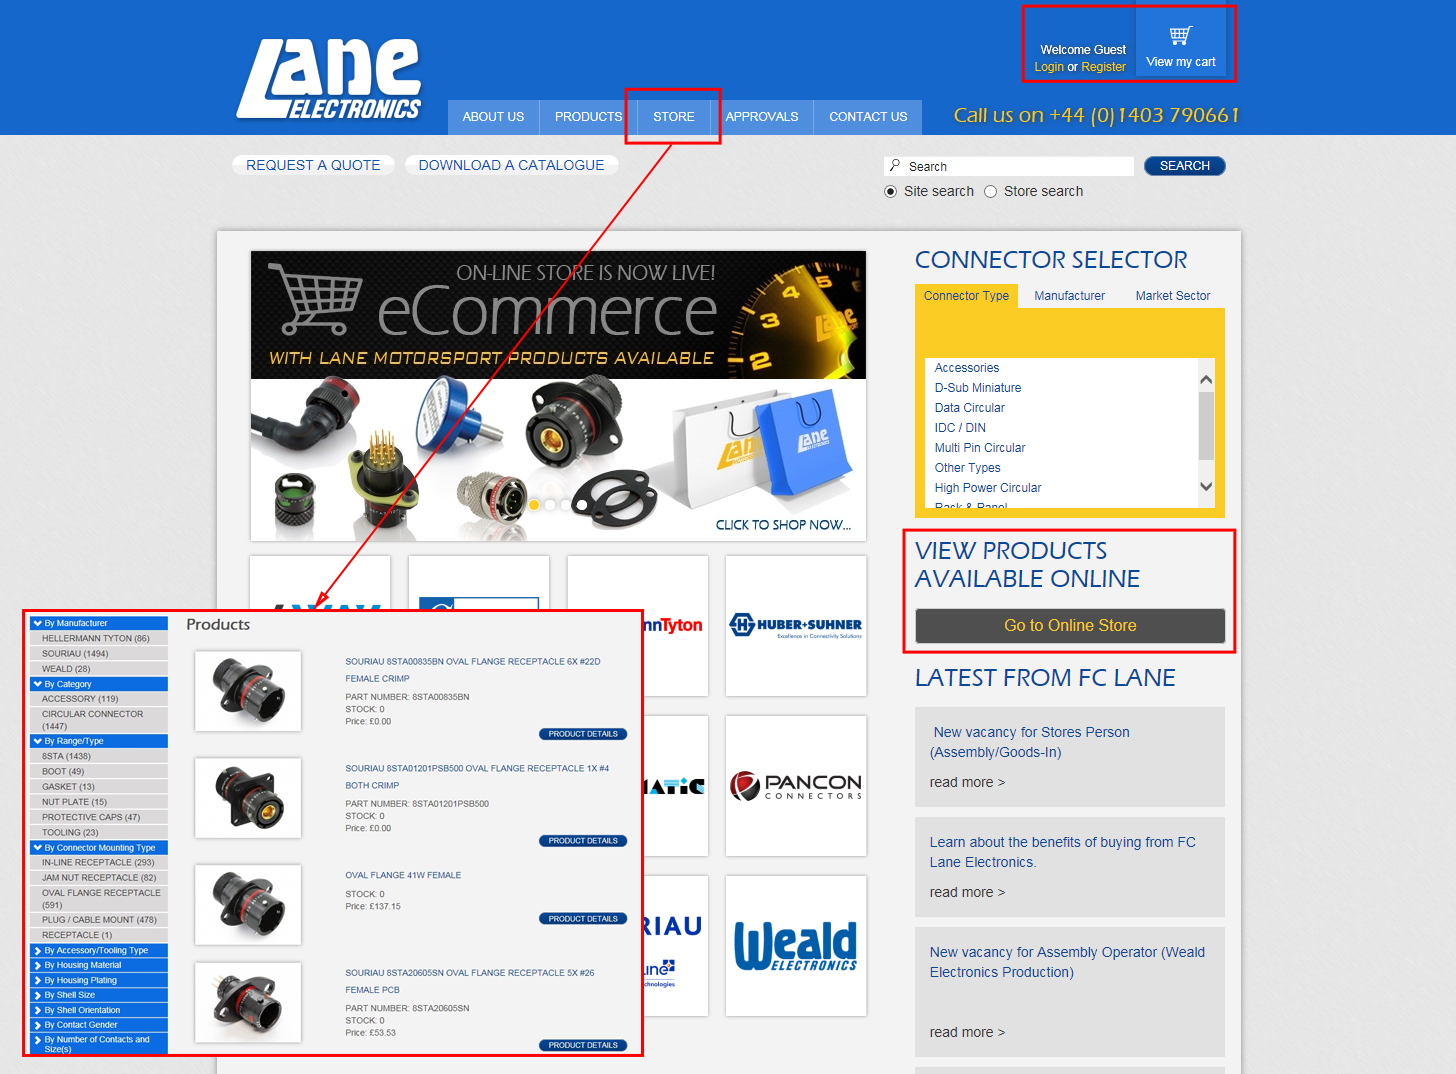 Lane's e-commerce website